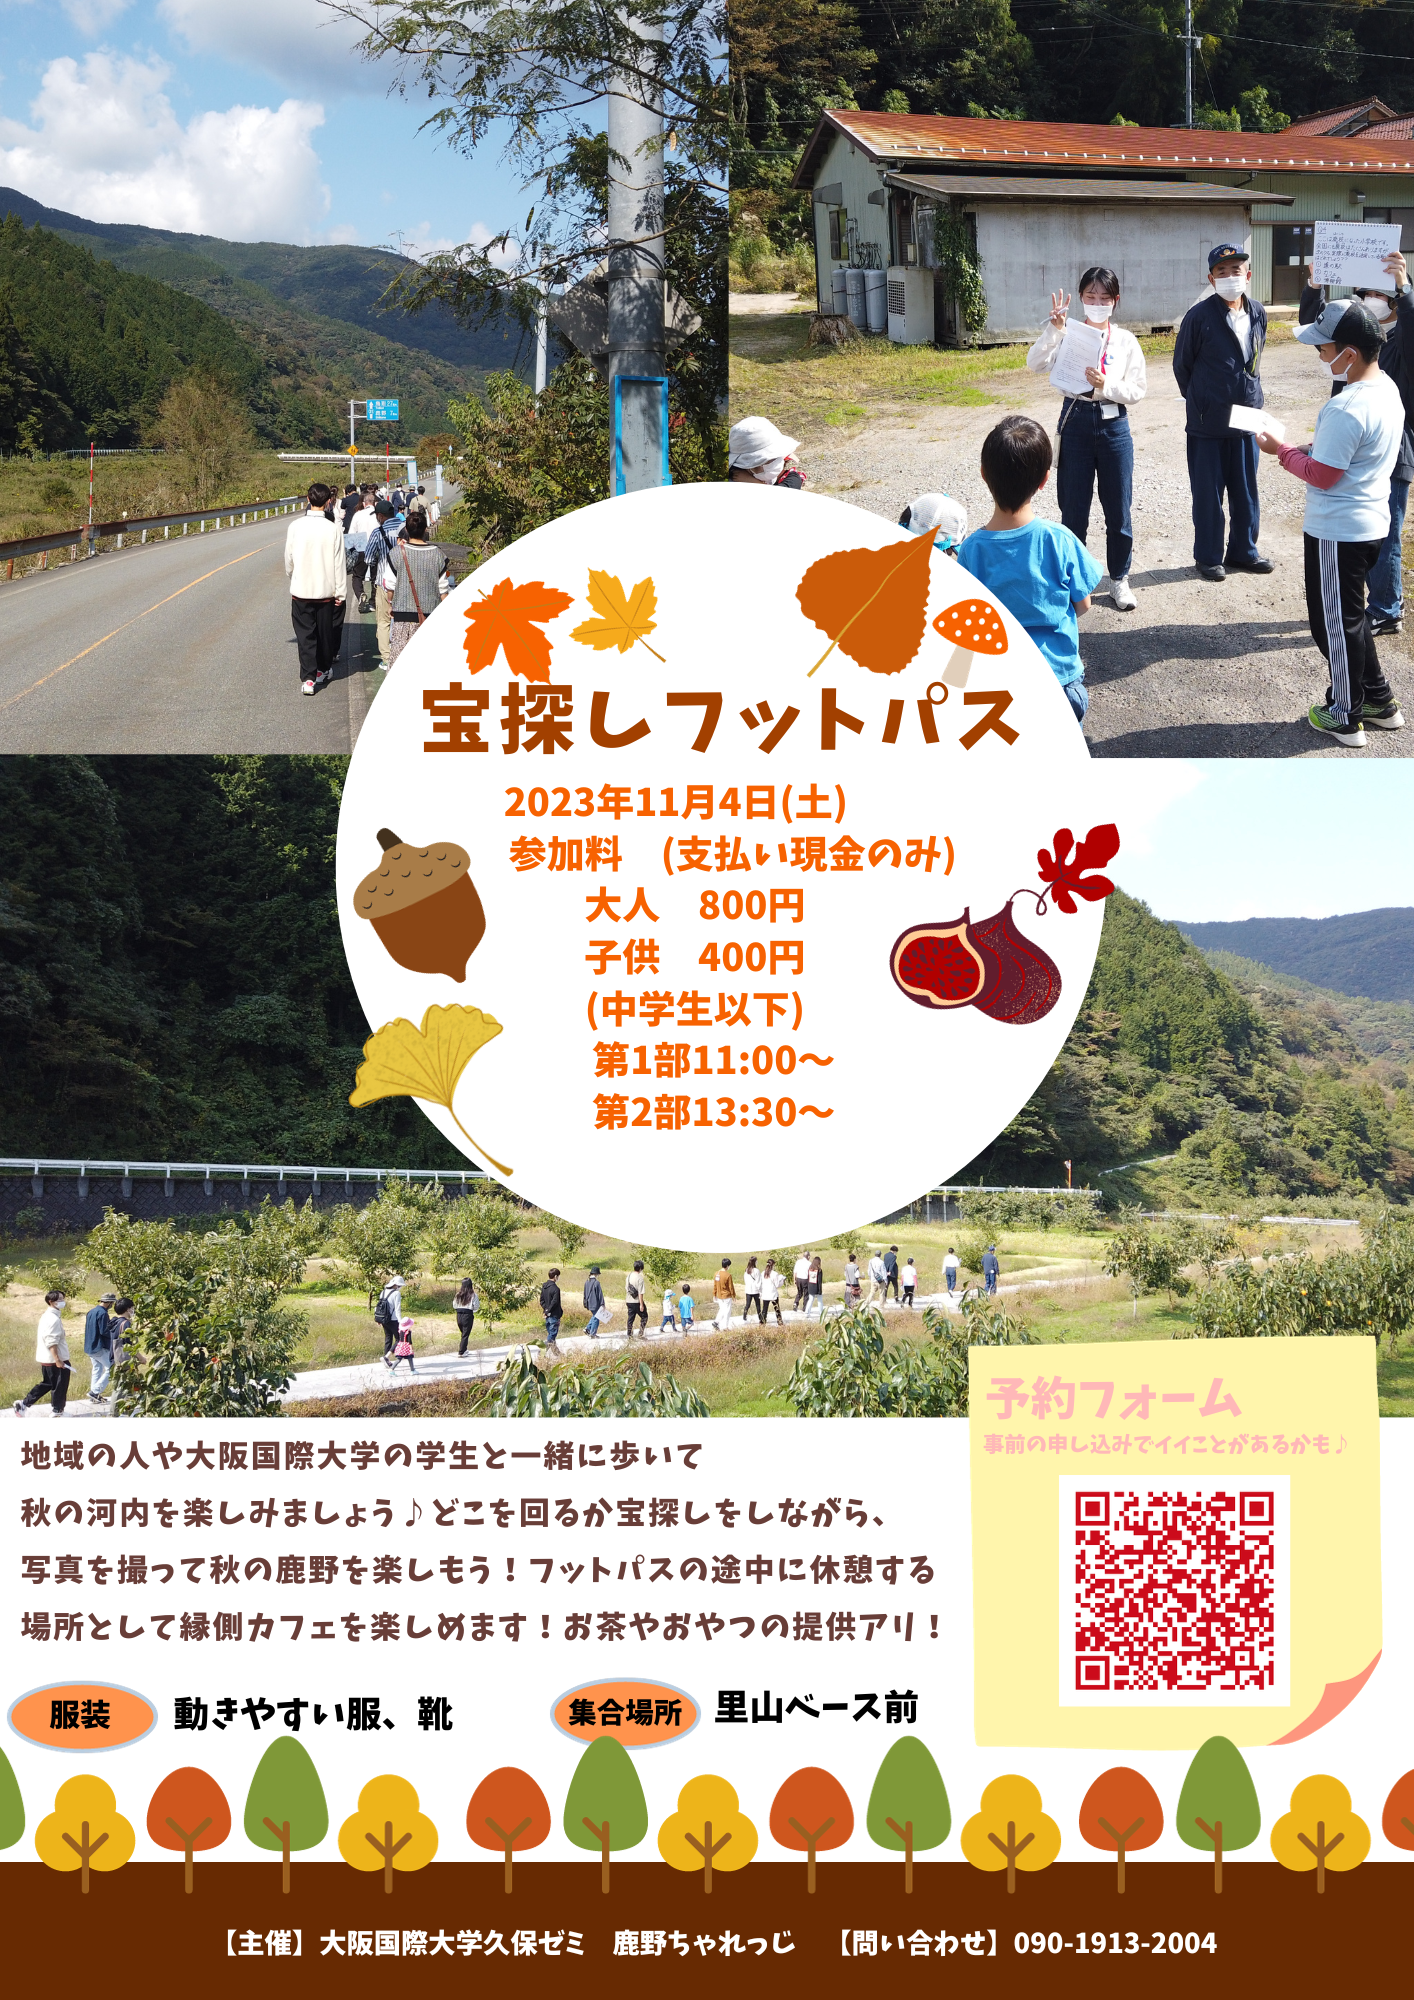 大阪国際大学の学生が、鳥取市の鹿野町河内で秋の里山を散策する「宝探しフットパス」を開催